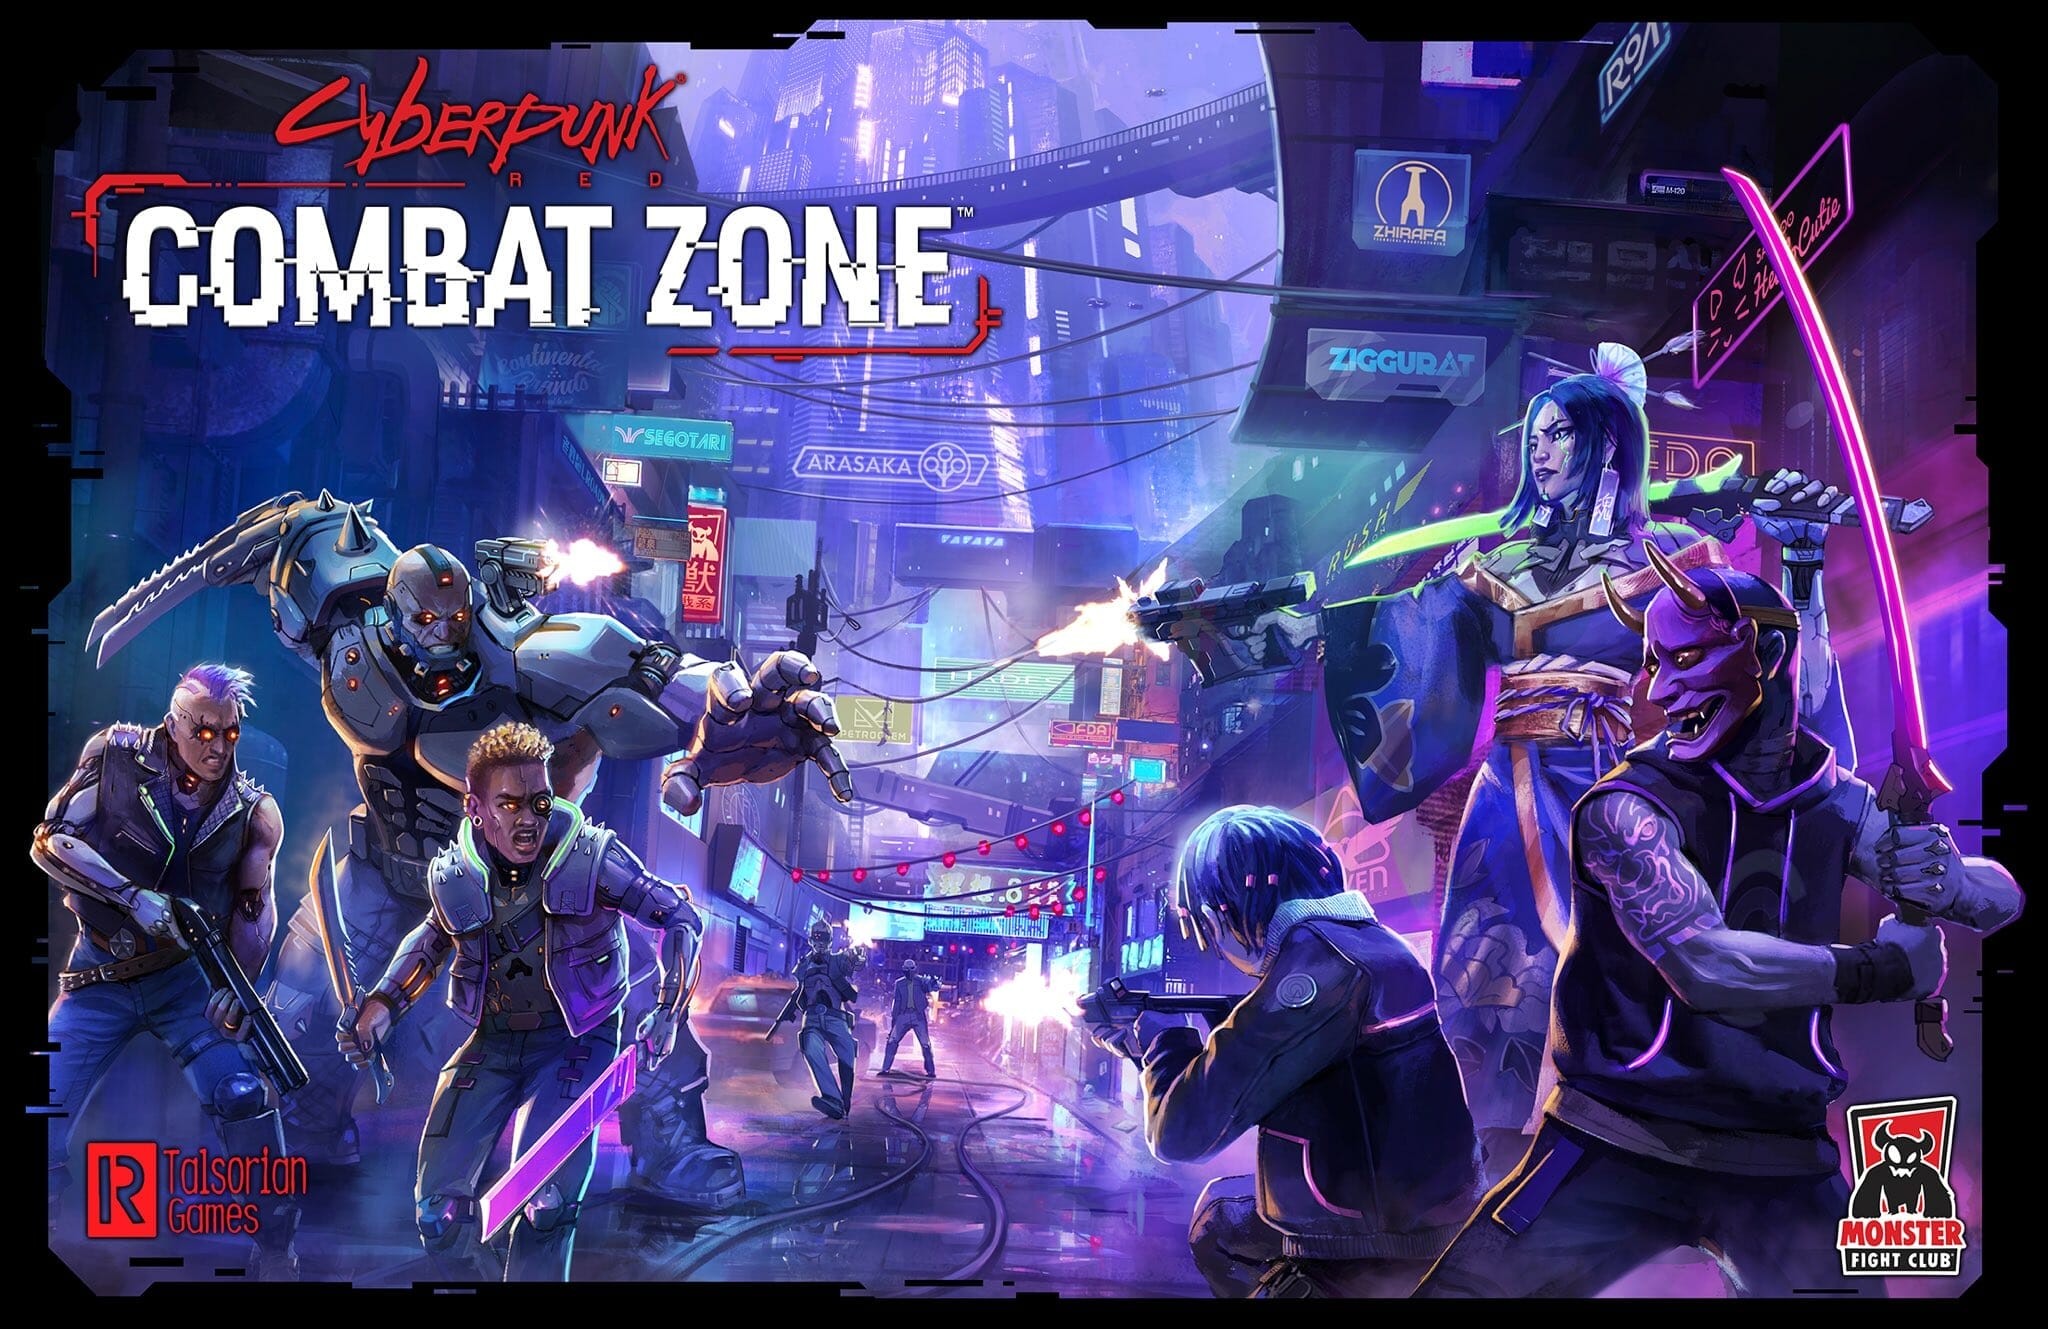 Cyberpunk Combat Zone